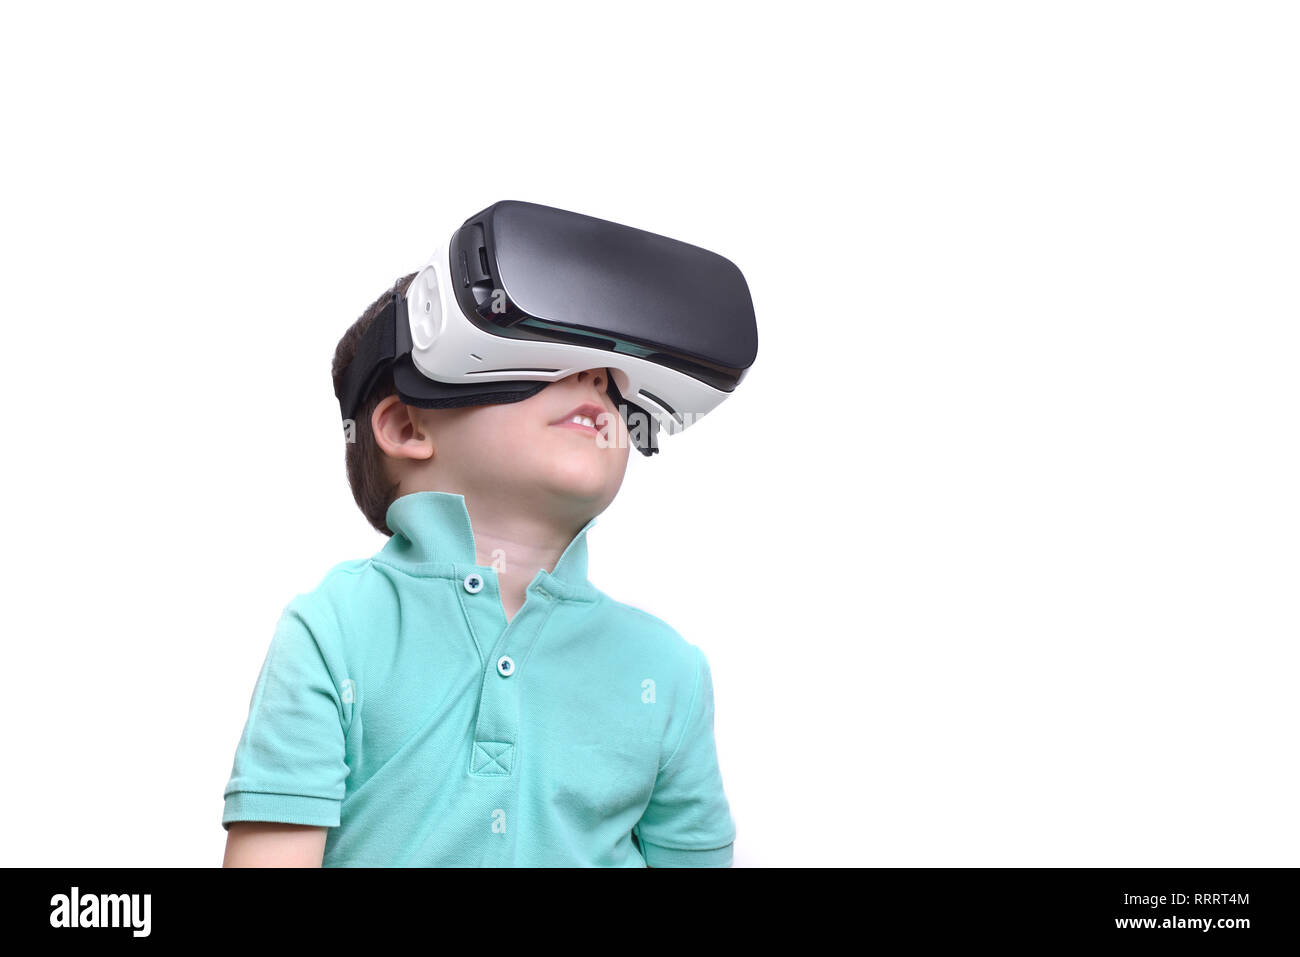 Erstaunt jugendlich Junge tragen virtual reality goggles Filme anschauen  oder Videospiele spielen, isoliert auf Weiss. Überrascht Teenager suchen im  VR-Brille. E Stockfotografie - Alamy